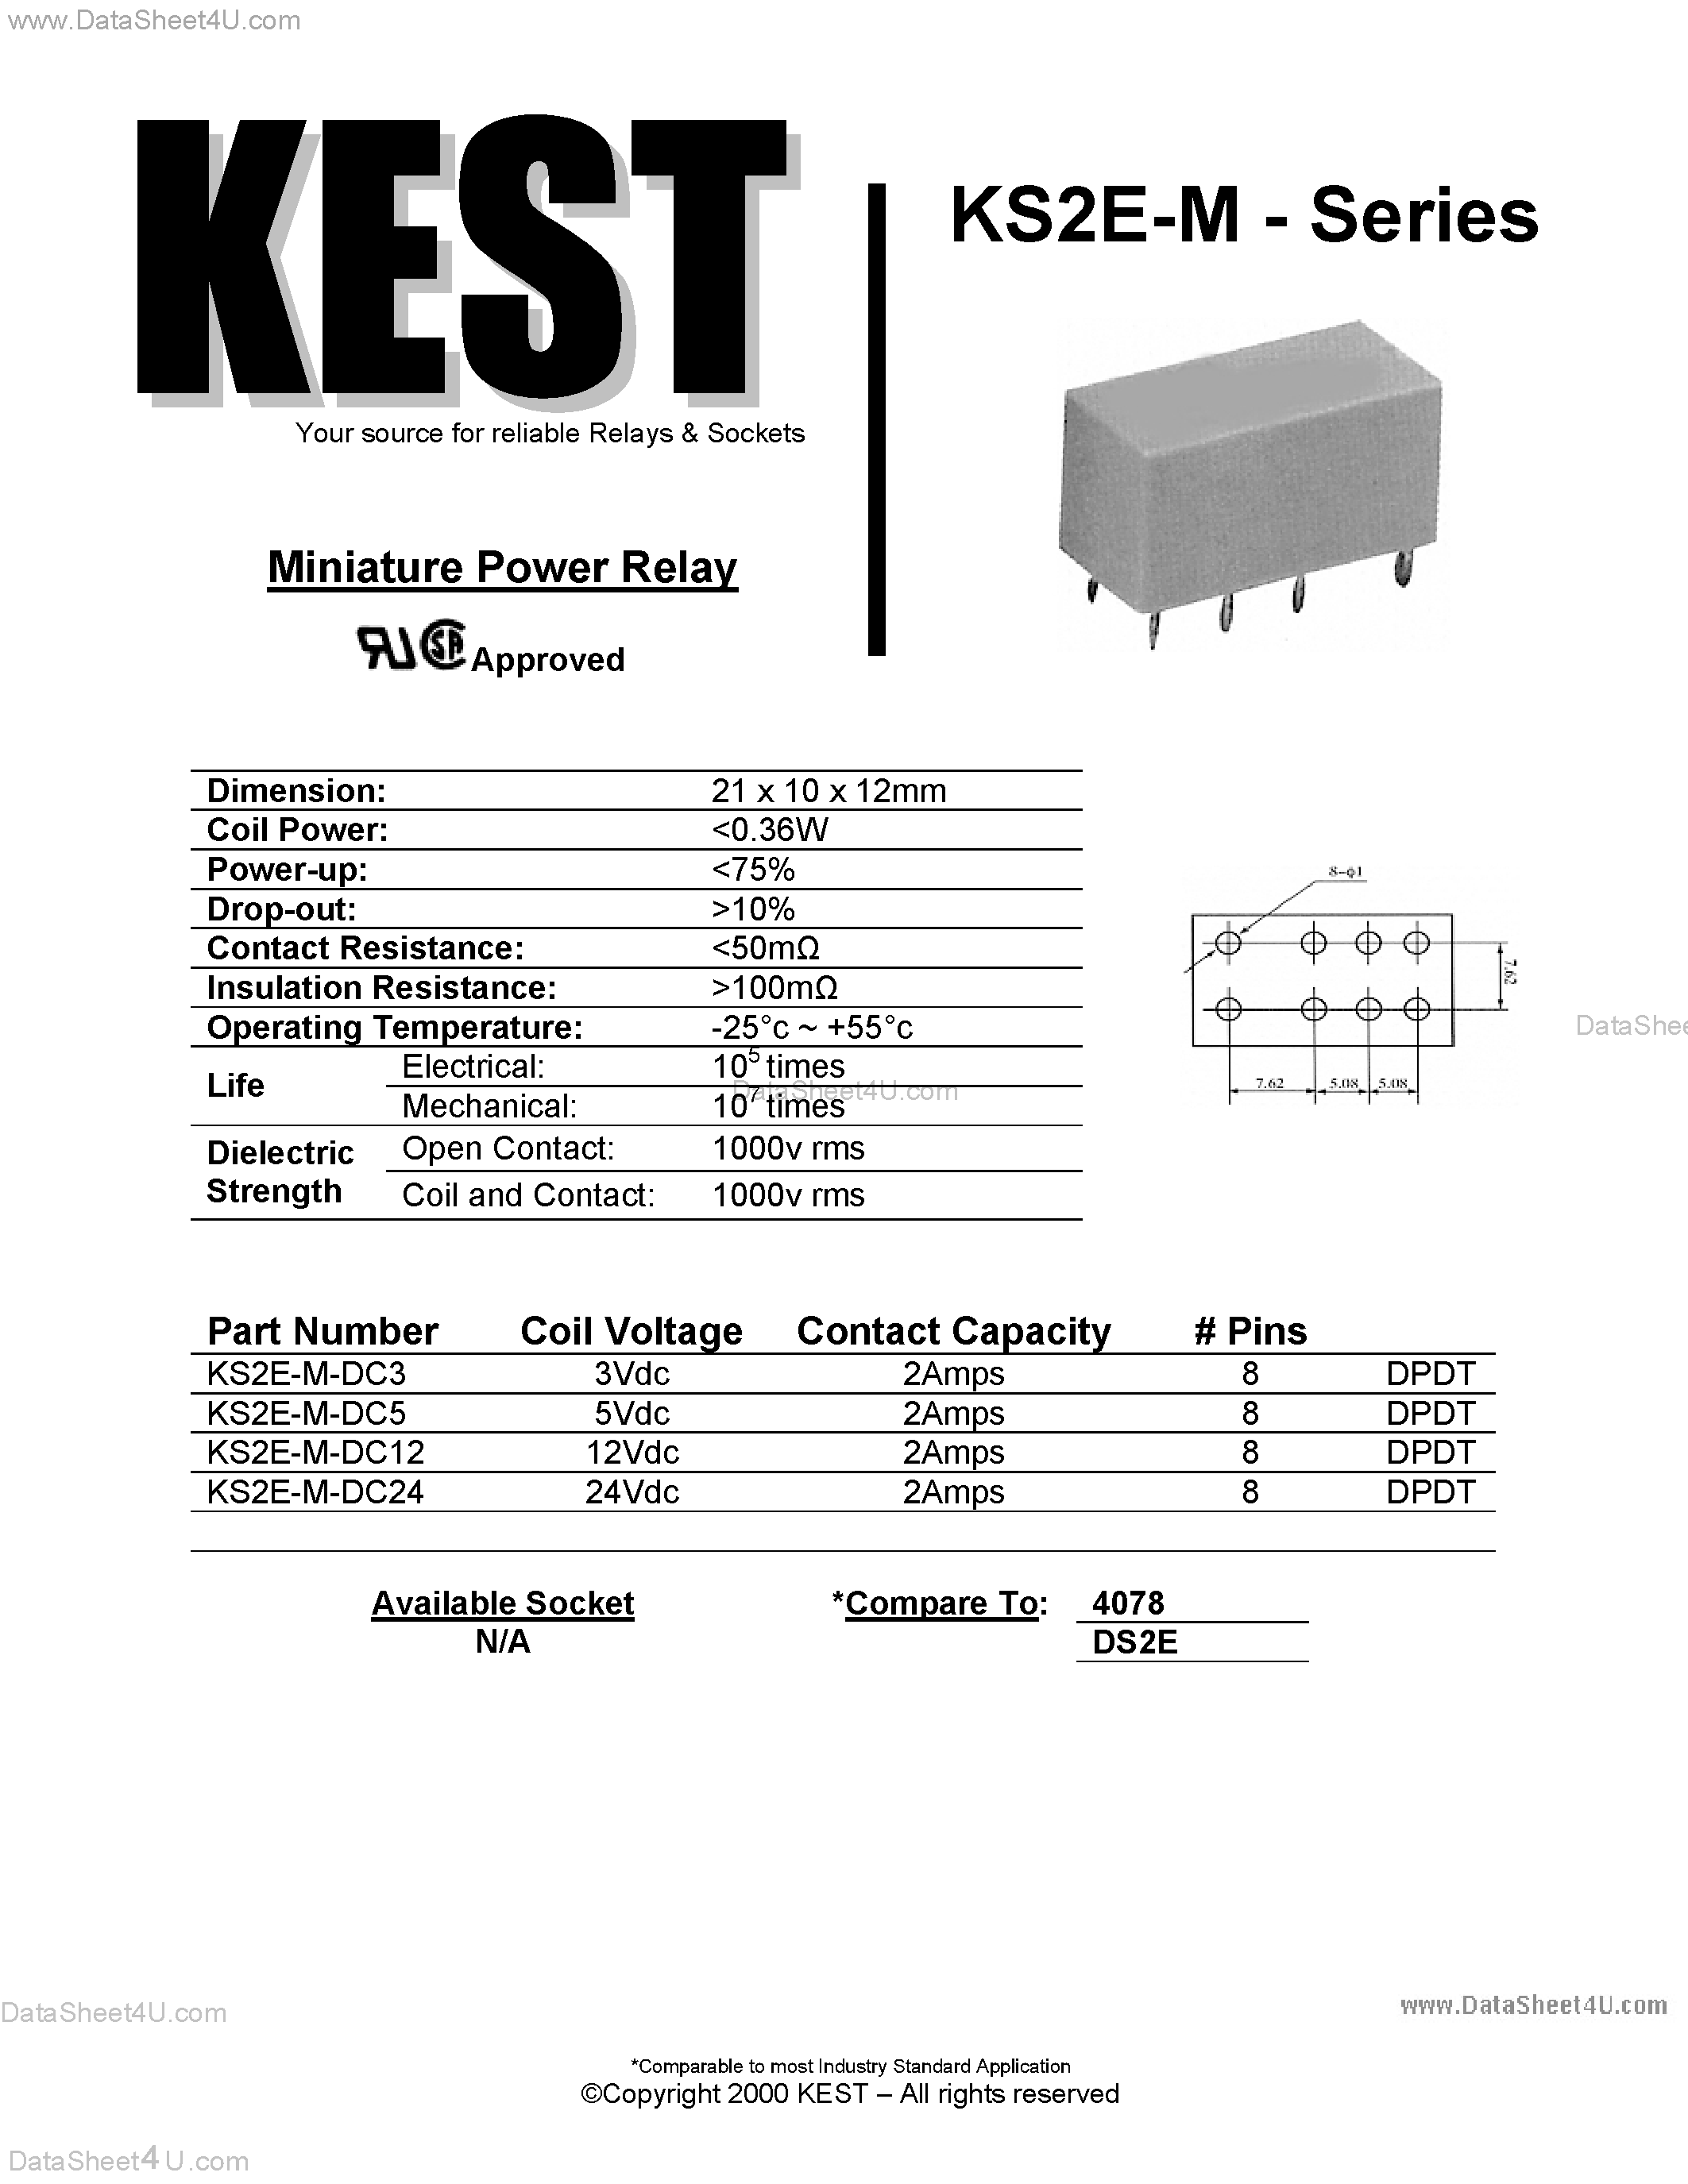 Даташит KS2E-M-DC12 - (KS2E-M Series) Miniature Power Relay страница 1